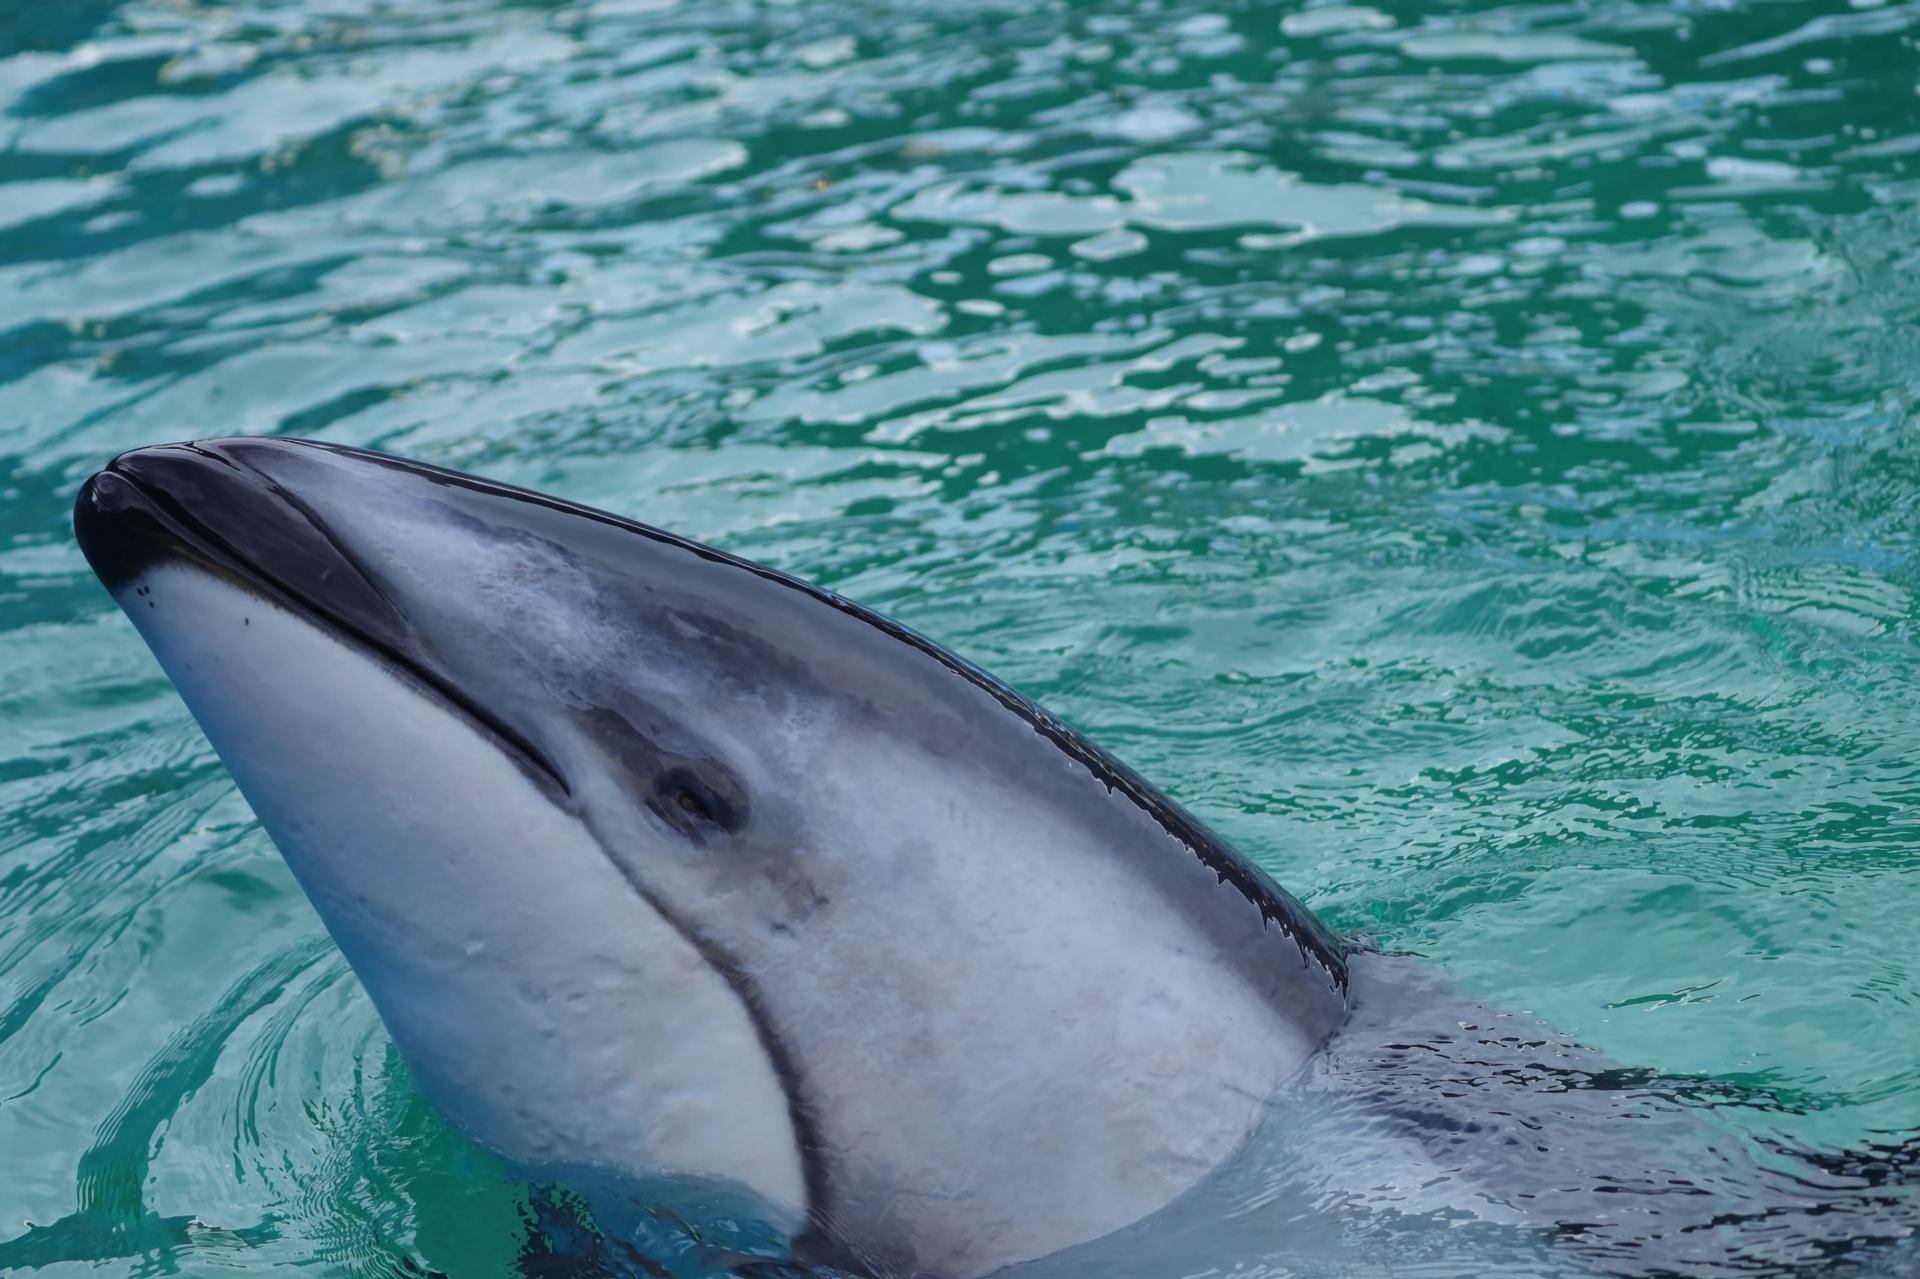 El Miami Seaquarium trasladó a un delfín de 40 años a Texas para mejorar su bienestar